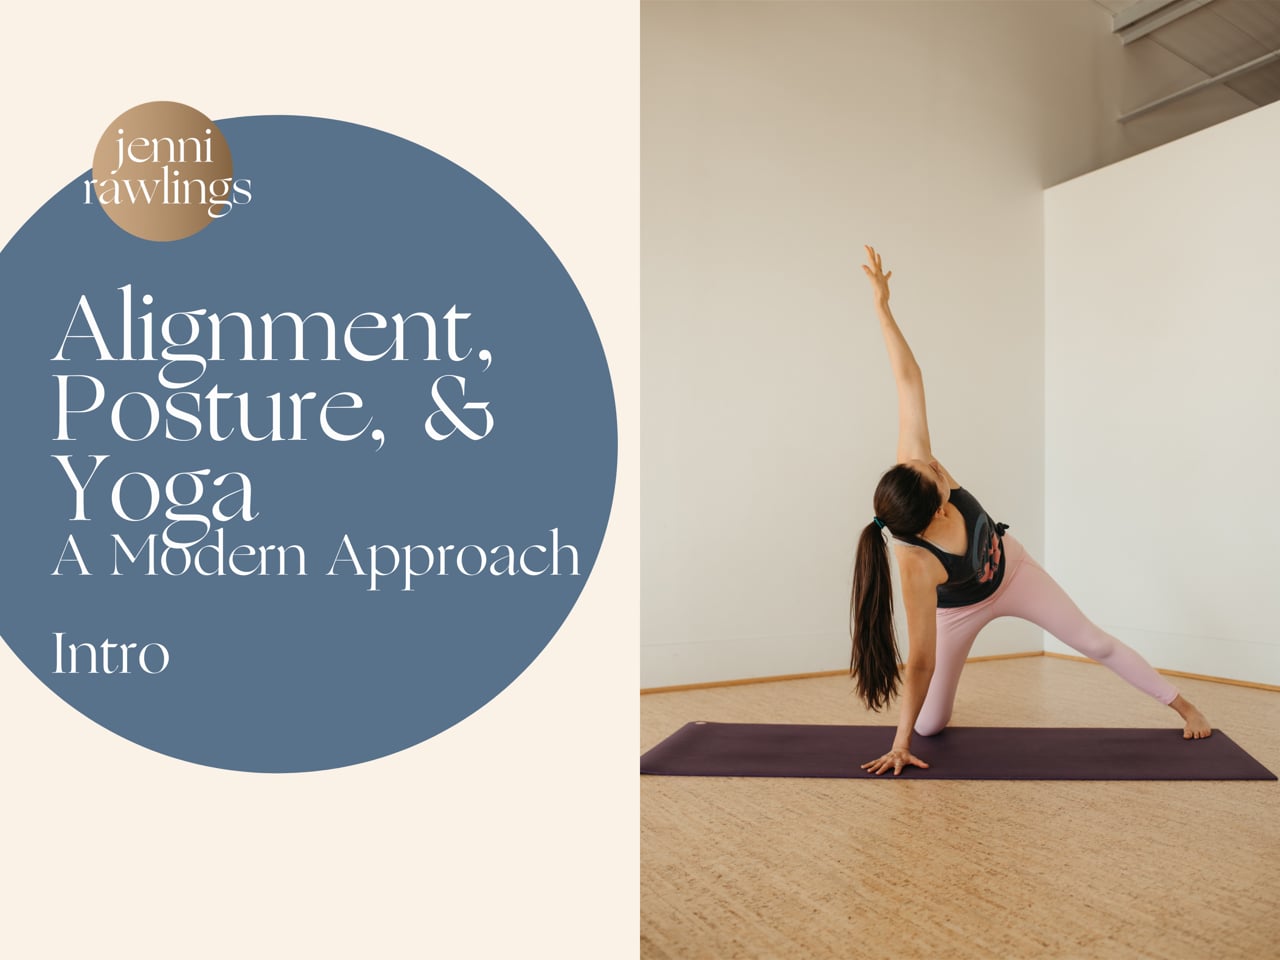 Intro – Alignment, Posture, & Yoga